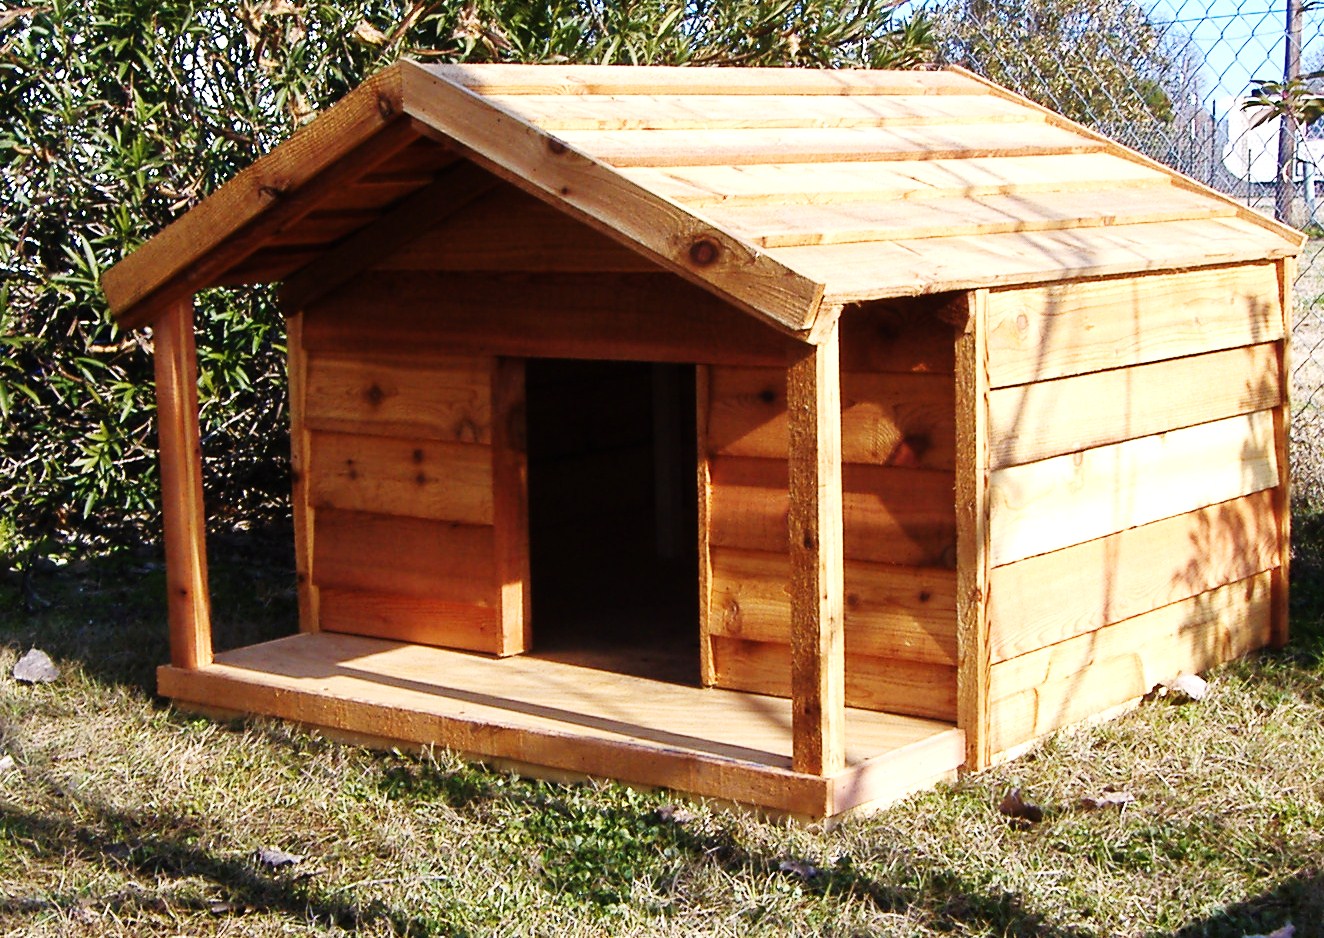  Ac Heated Insulated Dog House: Custom Cedar Dog House with Porch